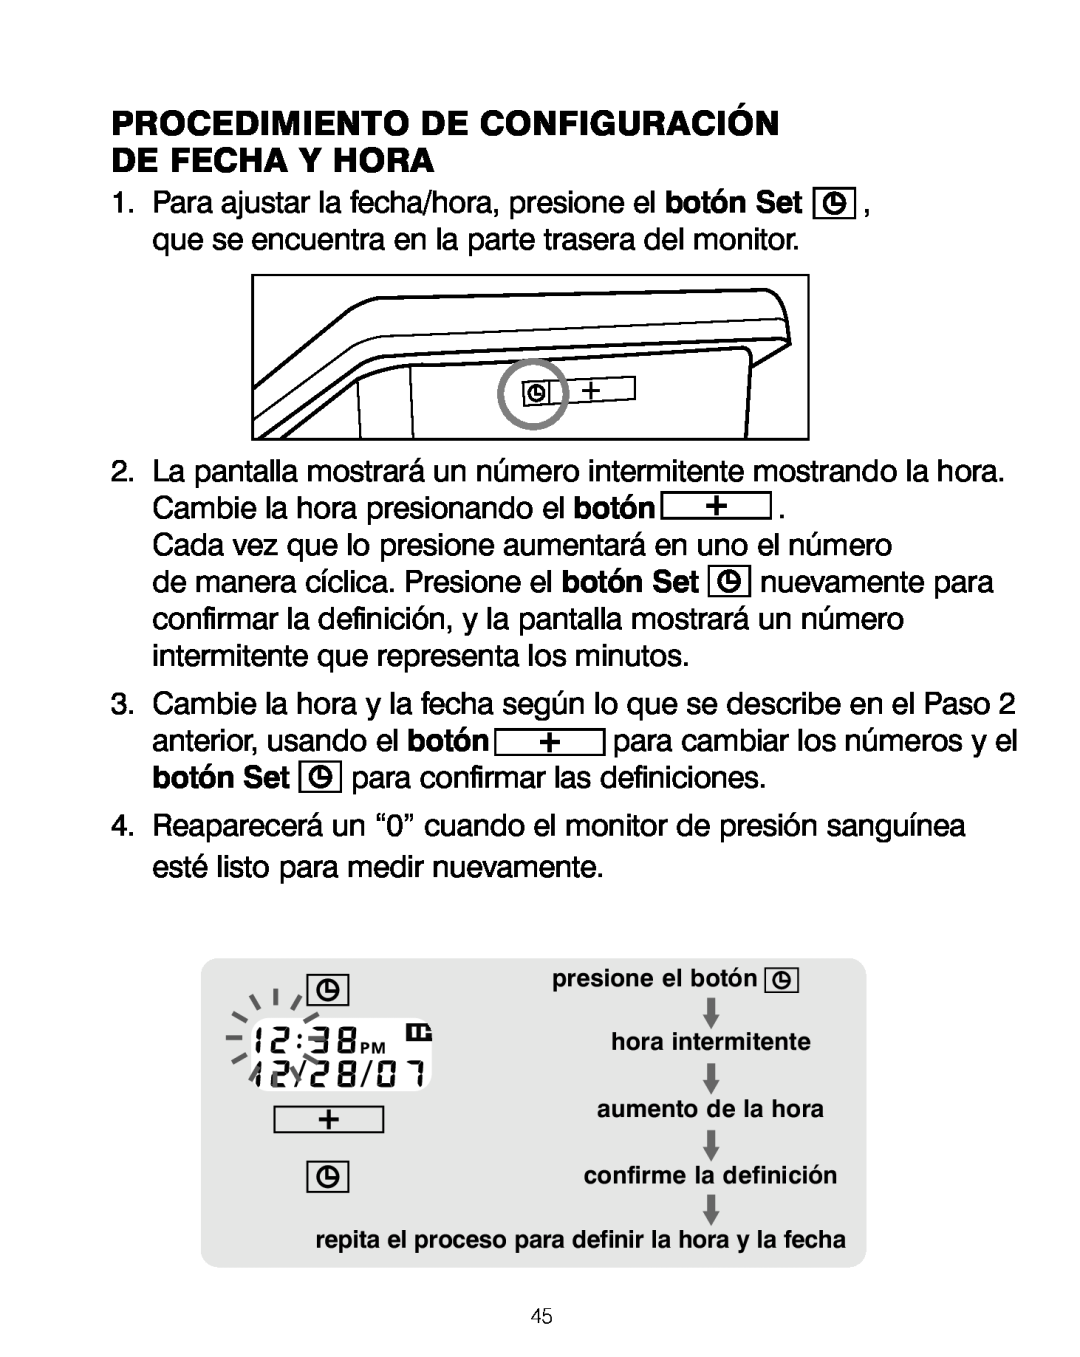 HoMedics BPA-200 manual Procedimiento De Configuración De Fecha Y Hora 